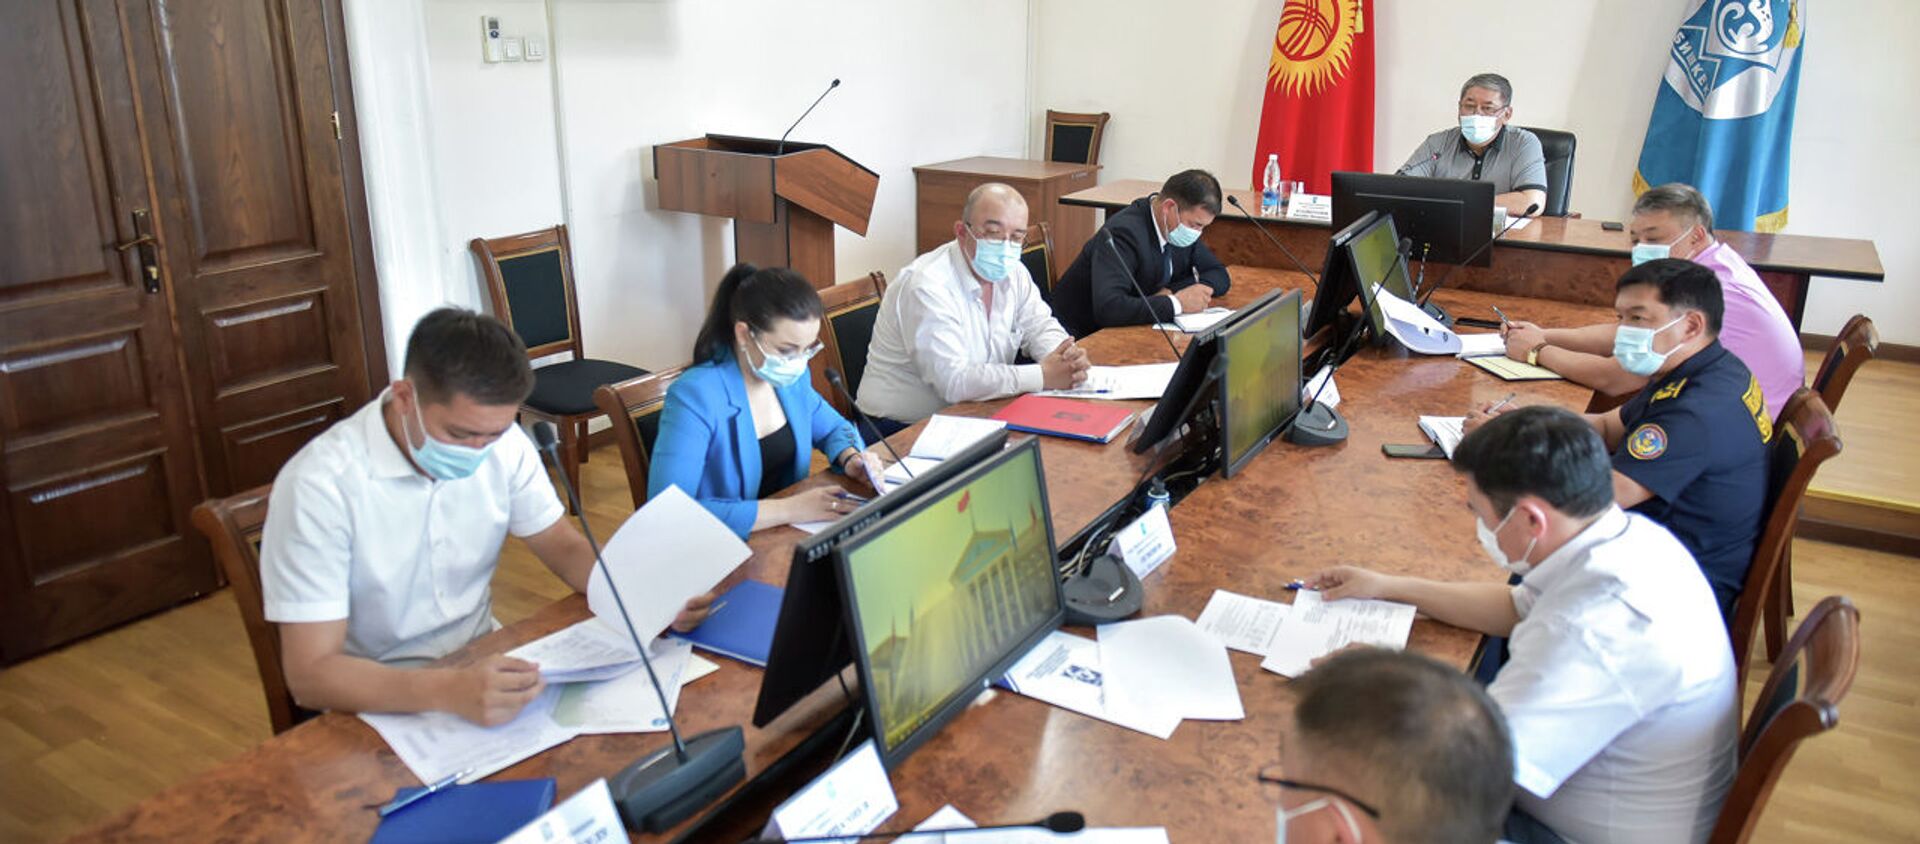 Заседание в мэрии по эпидемиологической обстановке в Бишкеке - Sputnik Кыргызстан, 1920, 30.06.2021